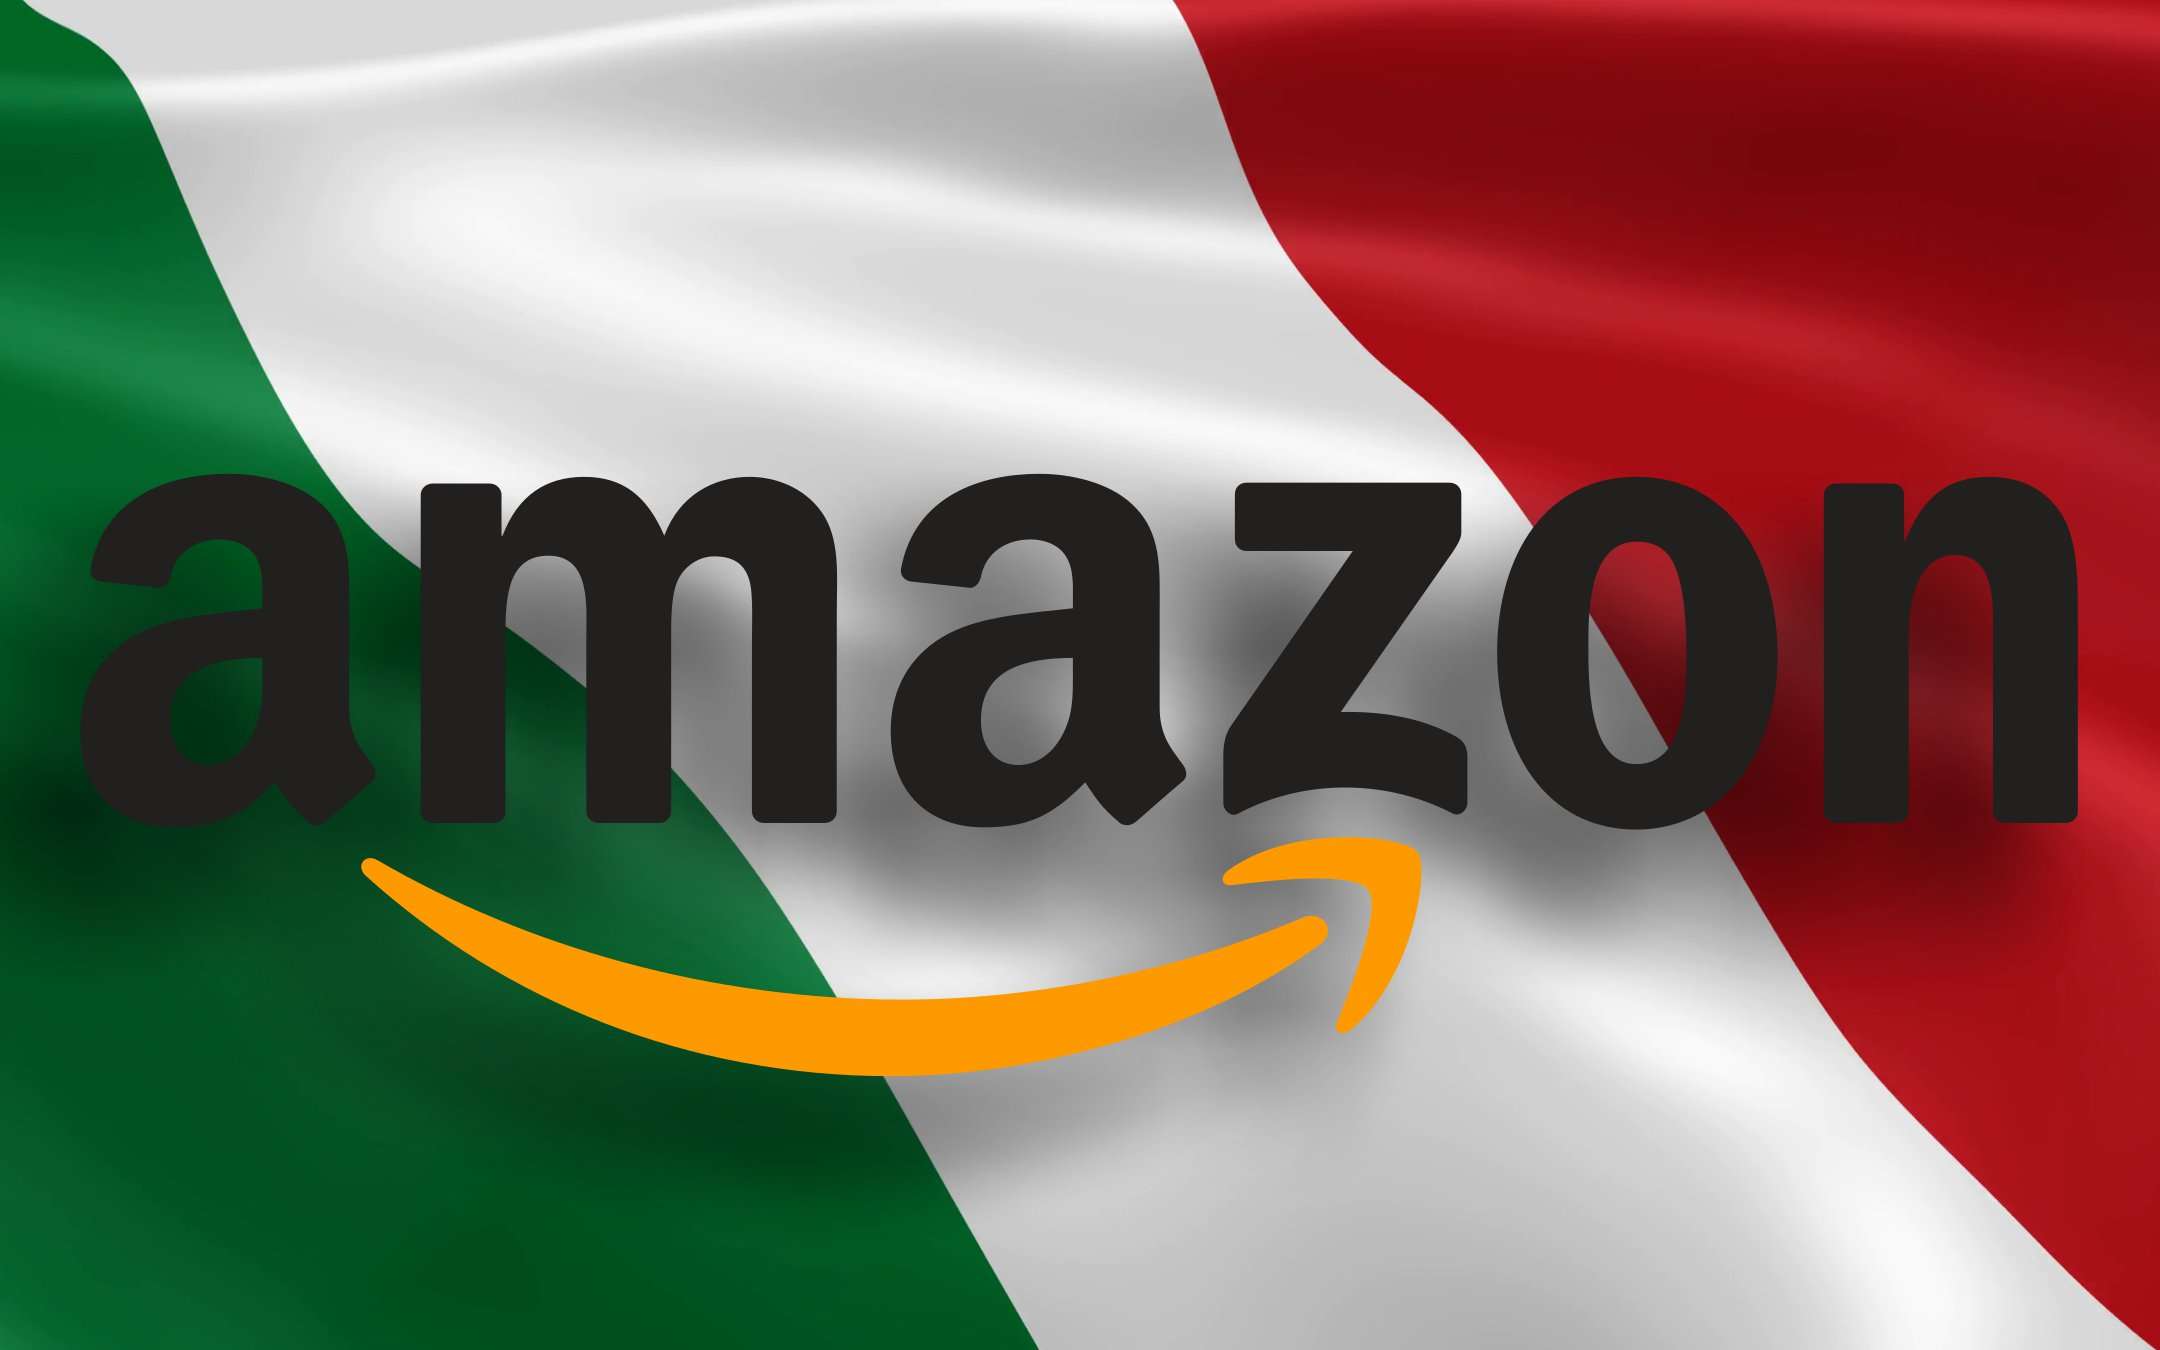 Amazon estende il periodo di reso: tutti i dettagli